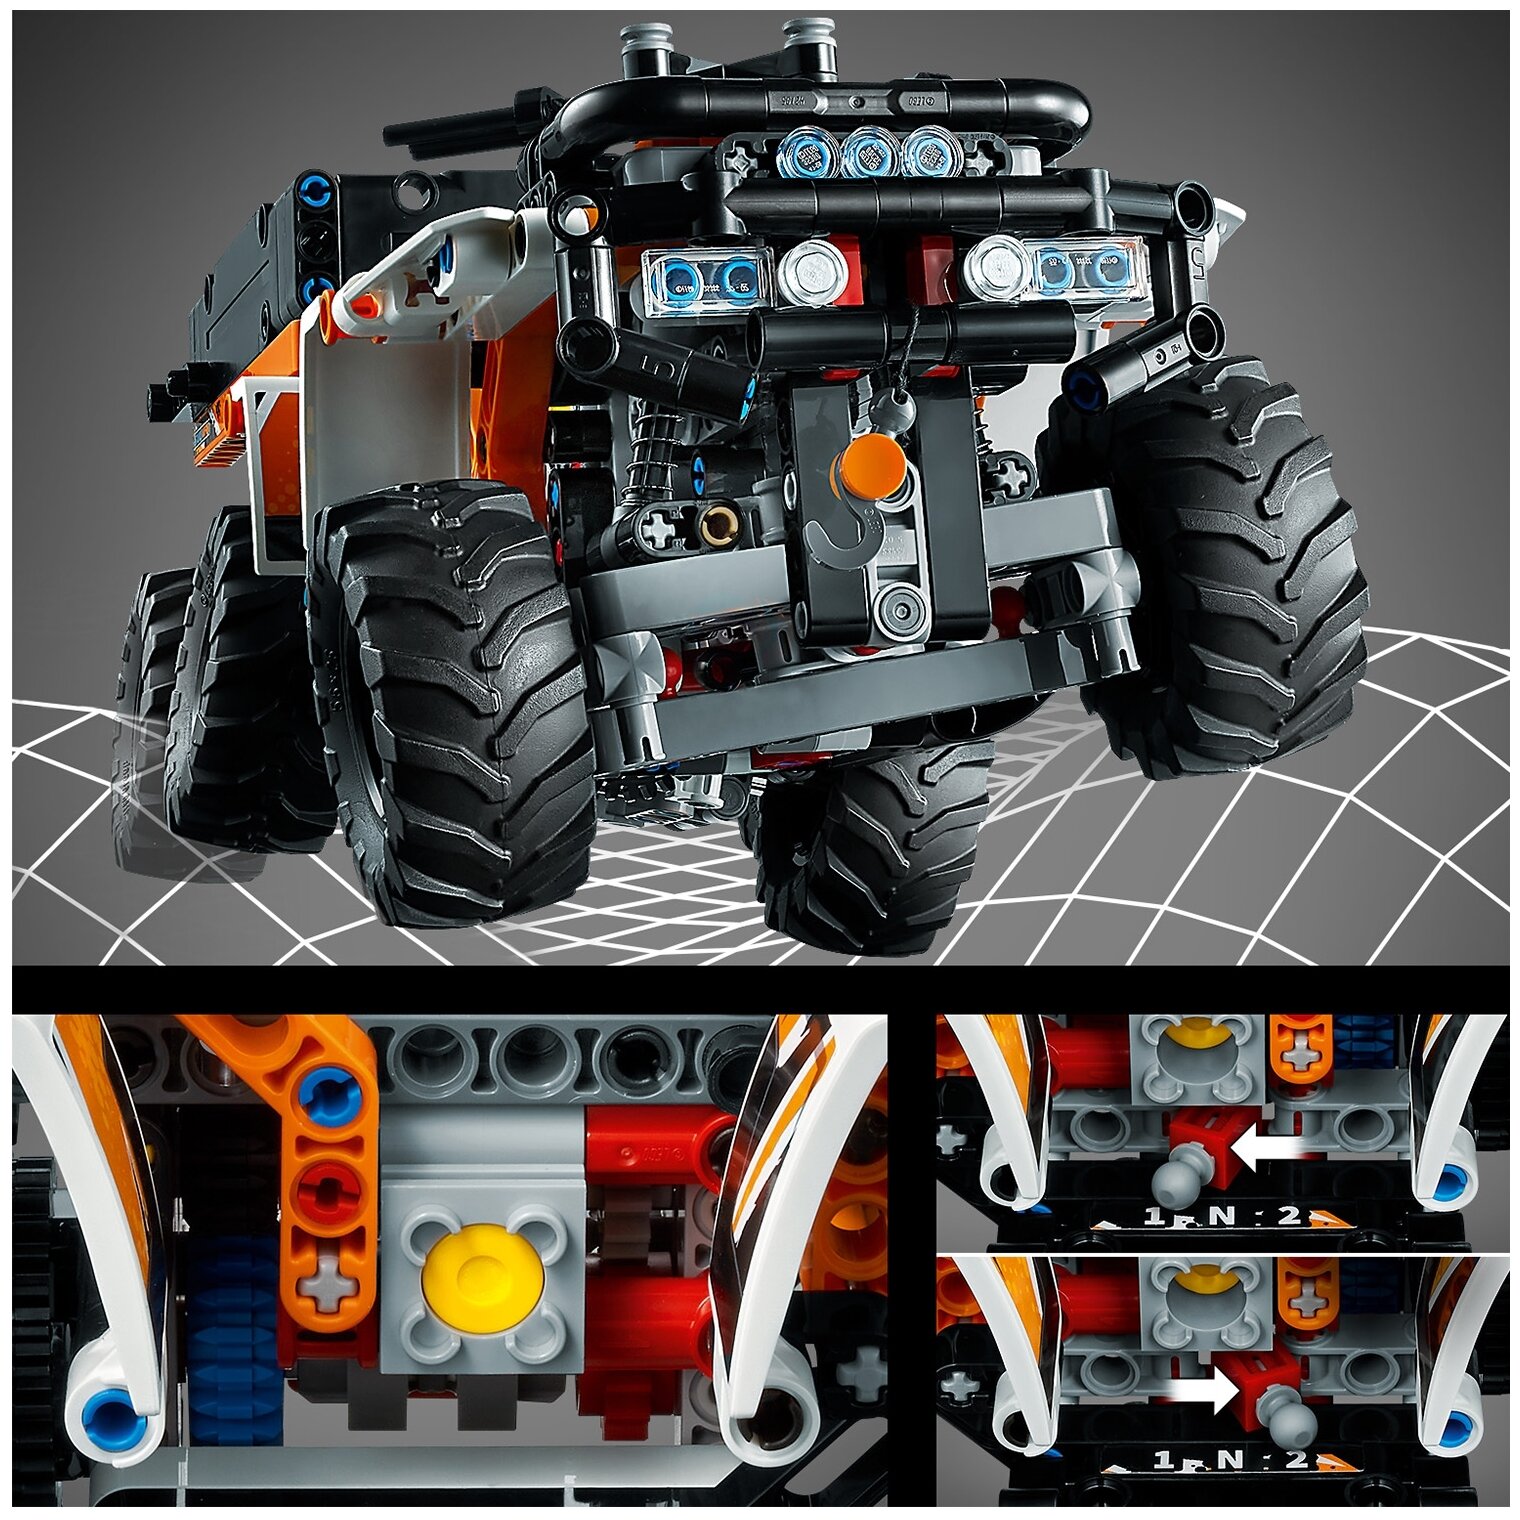 Конструктор LEGO Внедорожный грузовик Technic 42139 Казахстан